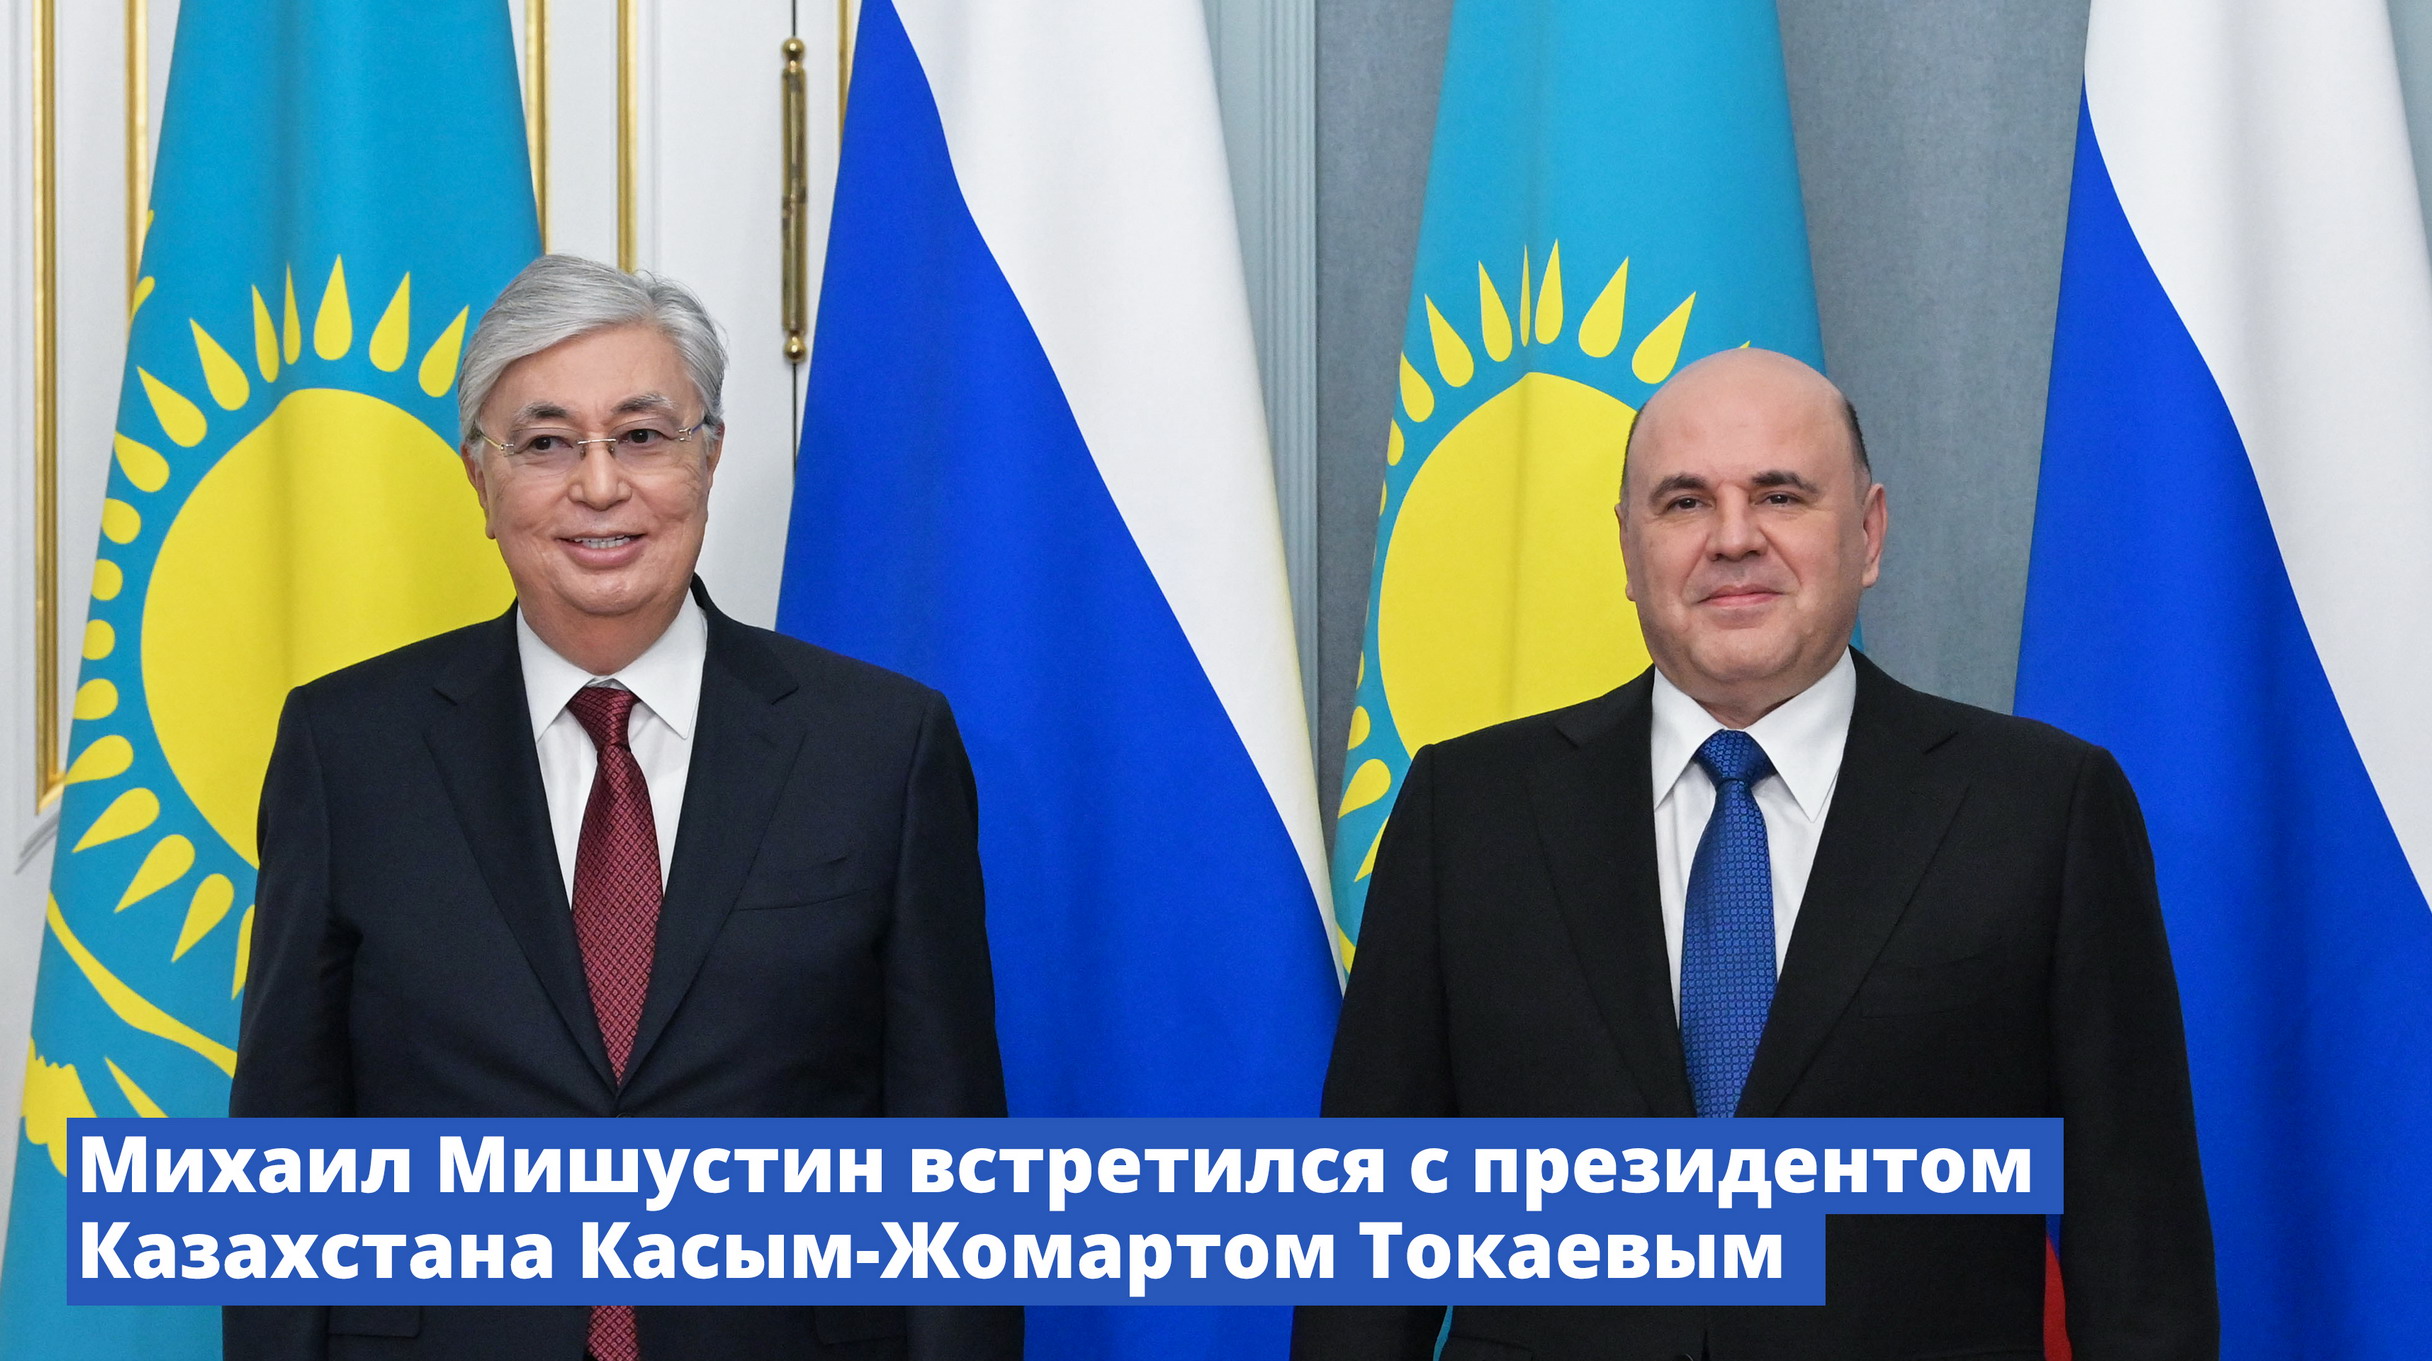 Михаил Мишустин встретился с президентом Казахстана Касым-Жомартом Токаевым